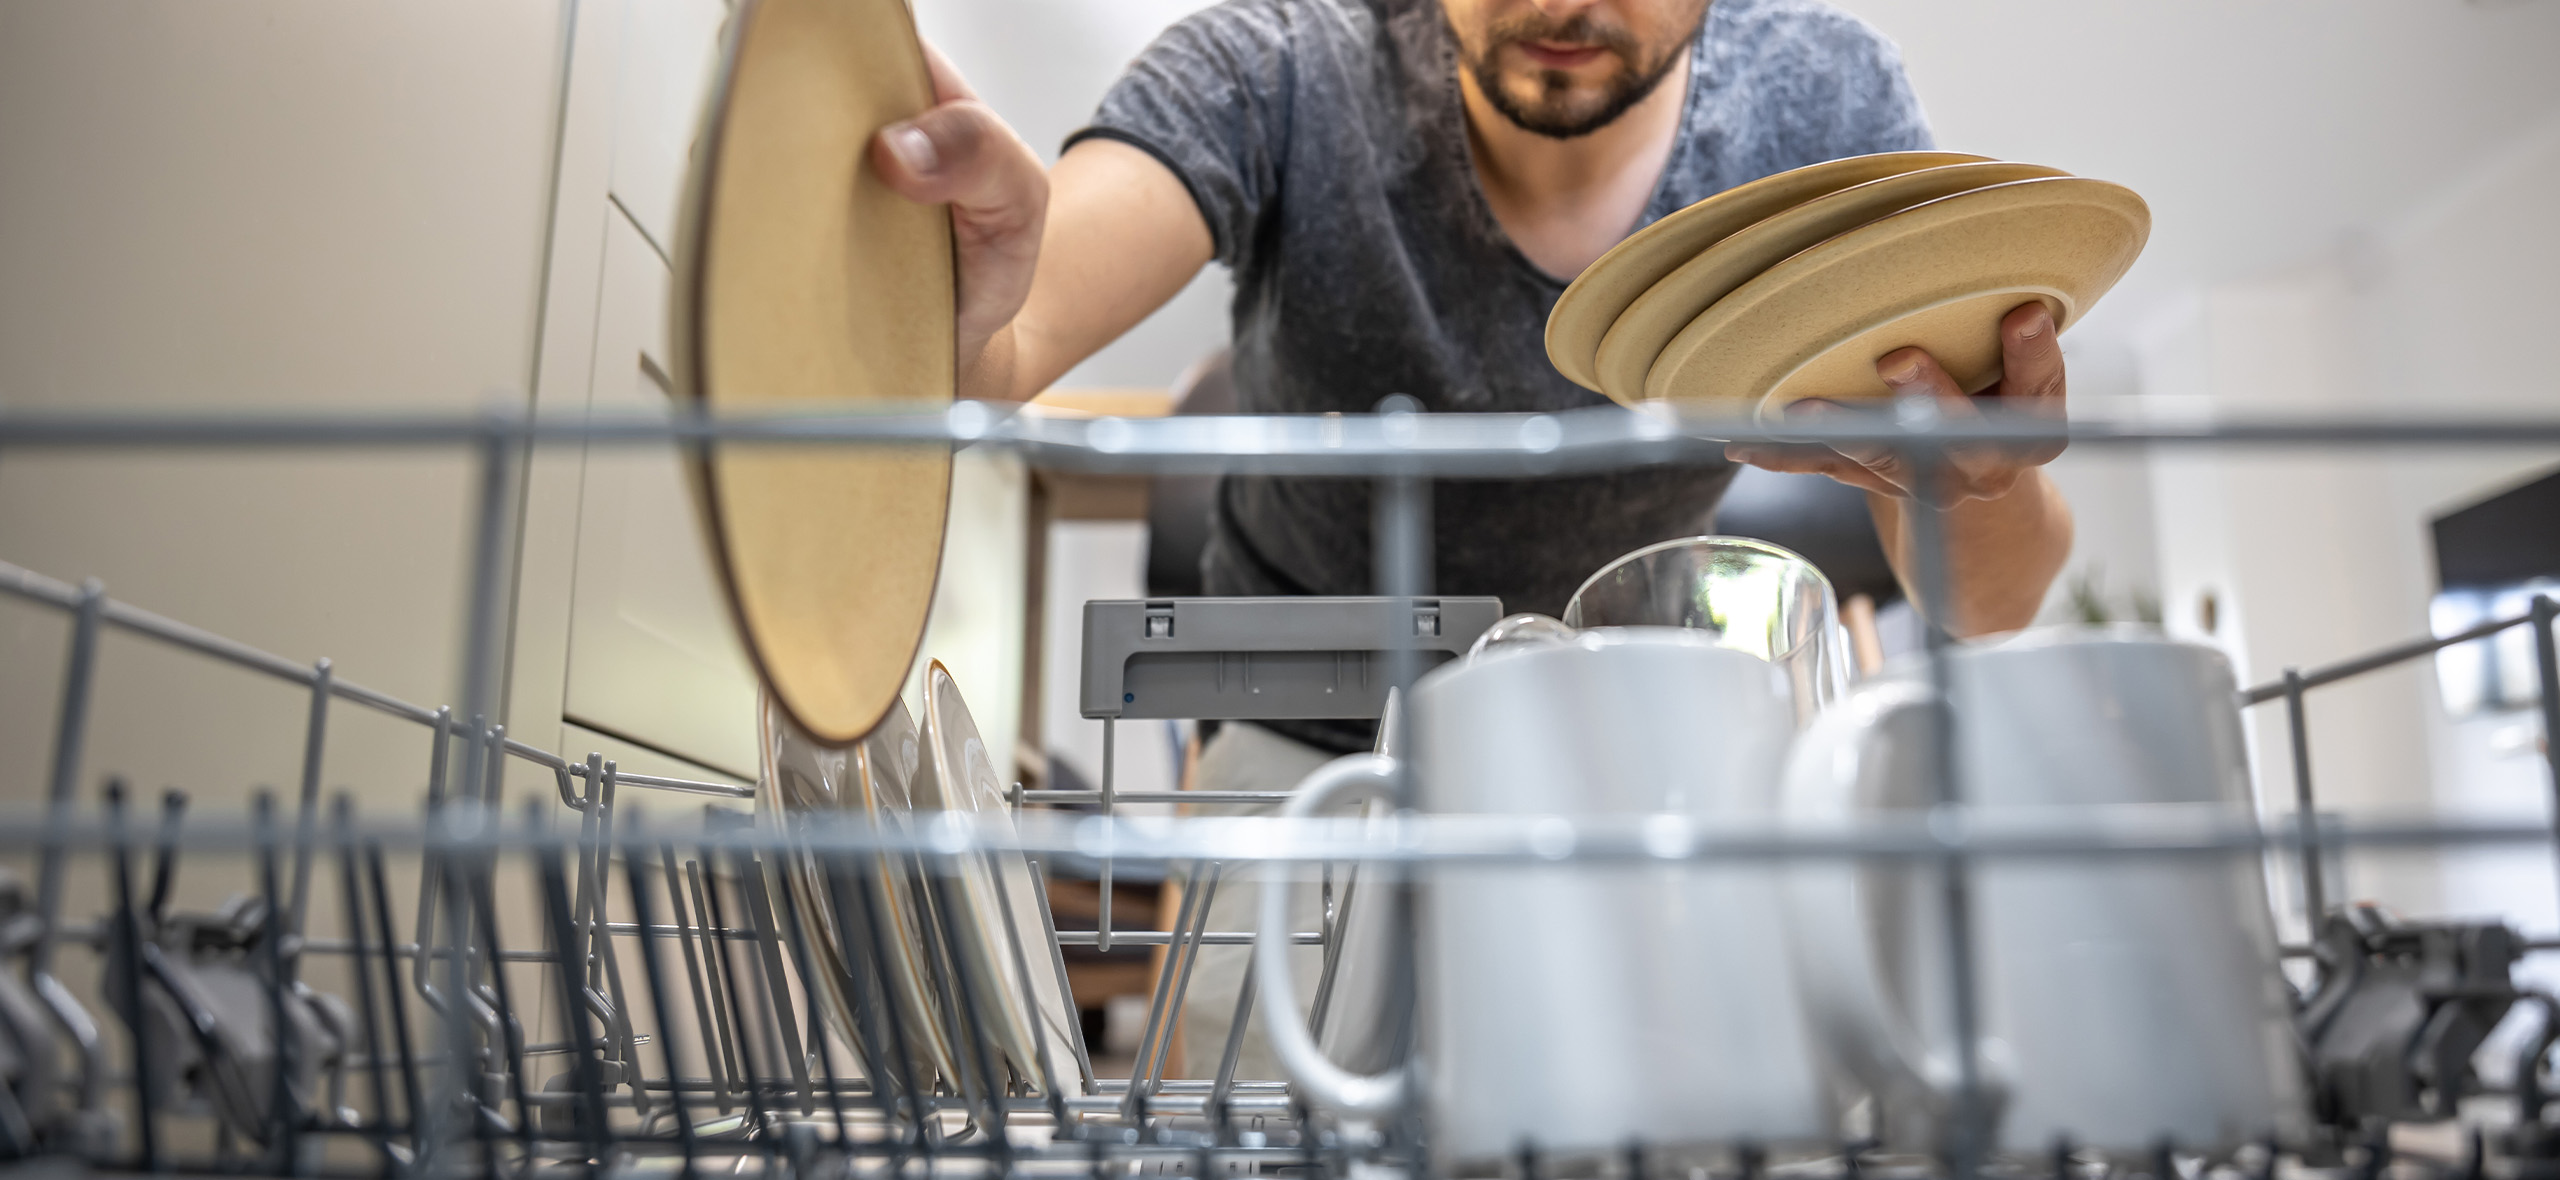 Правильный унитаз, посудомойка и еще 3 способа экономить в быту